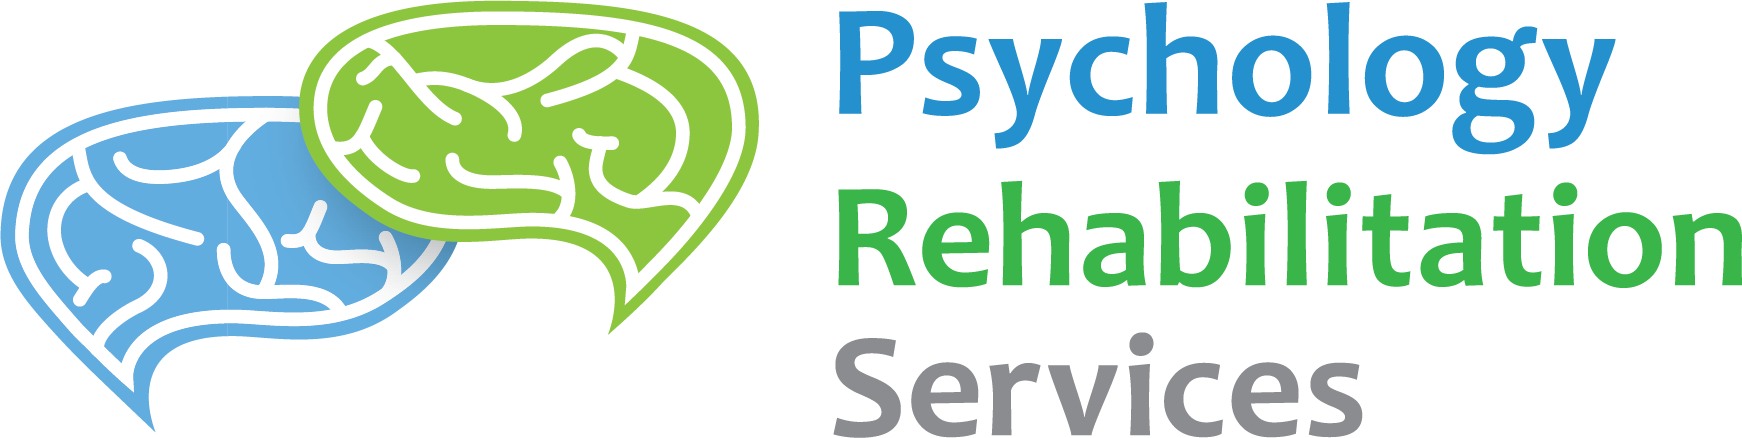 Psychology Rehabilitation Services